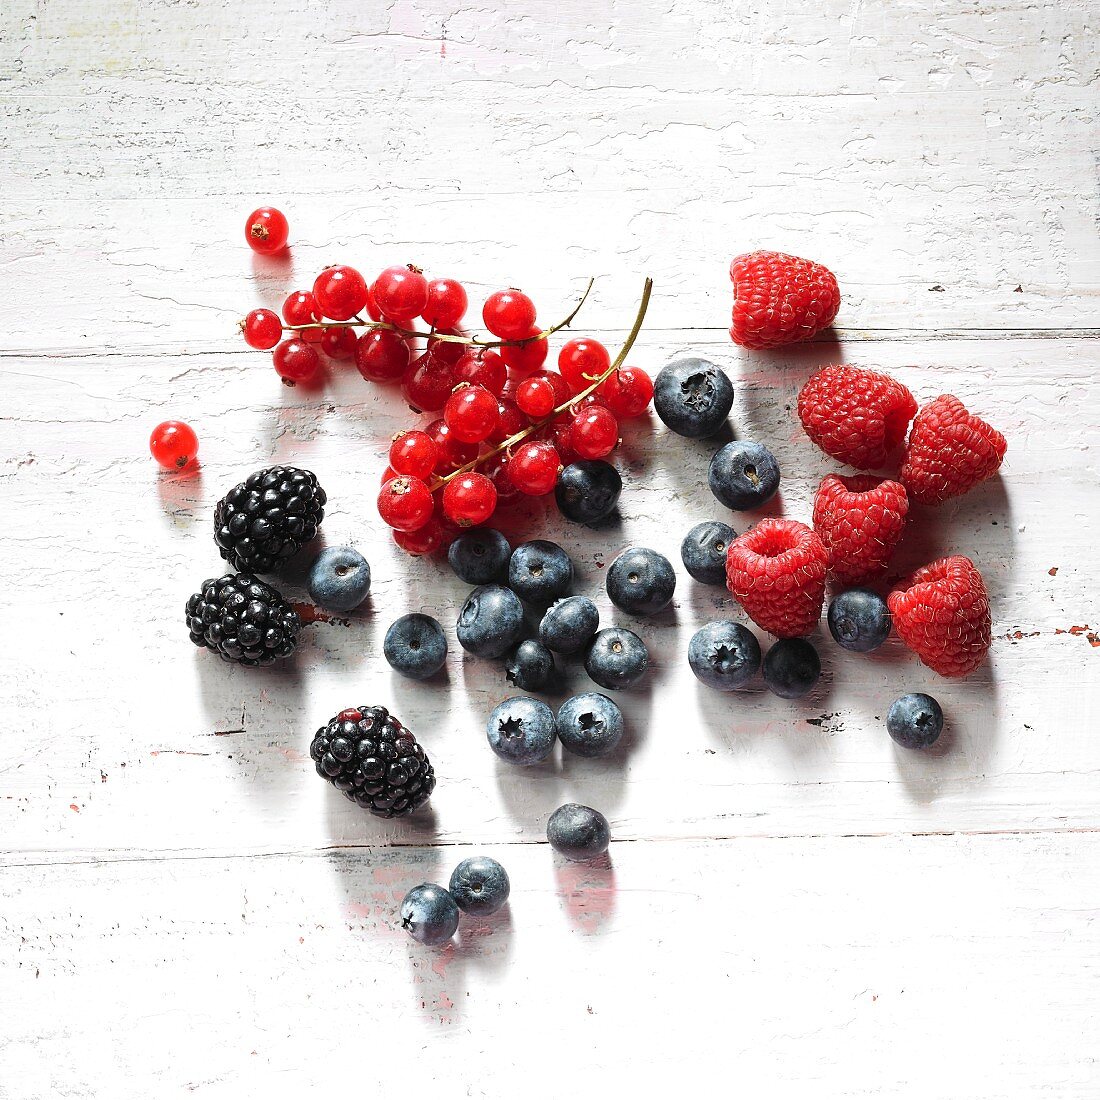 Redcurrant, raspberries, blackberries and blueberries